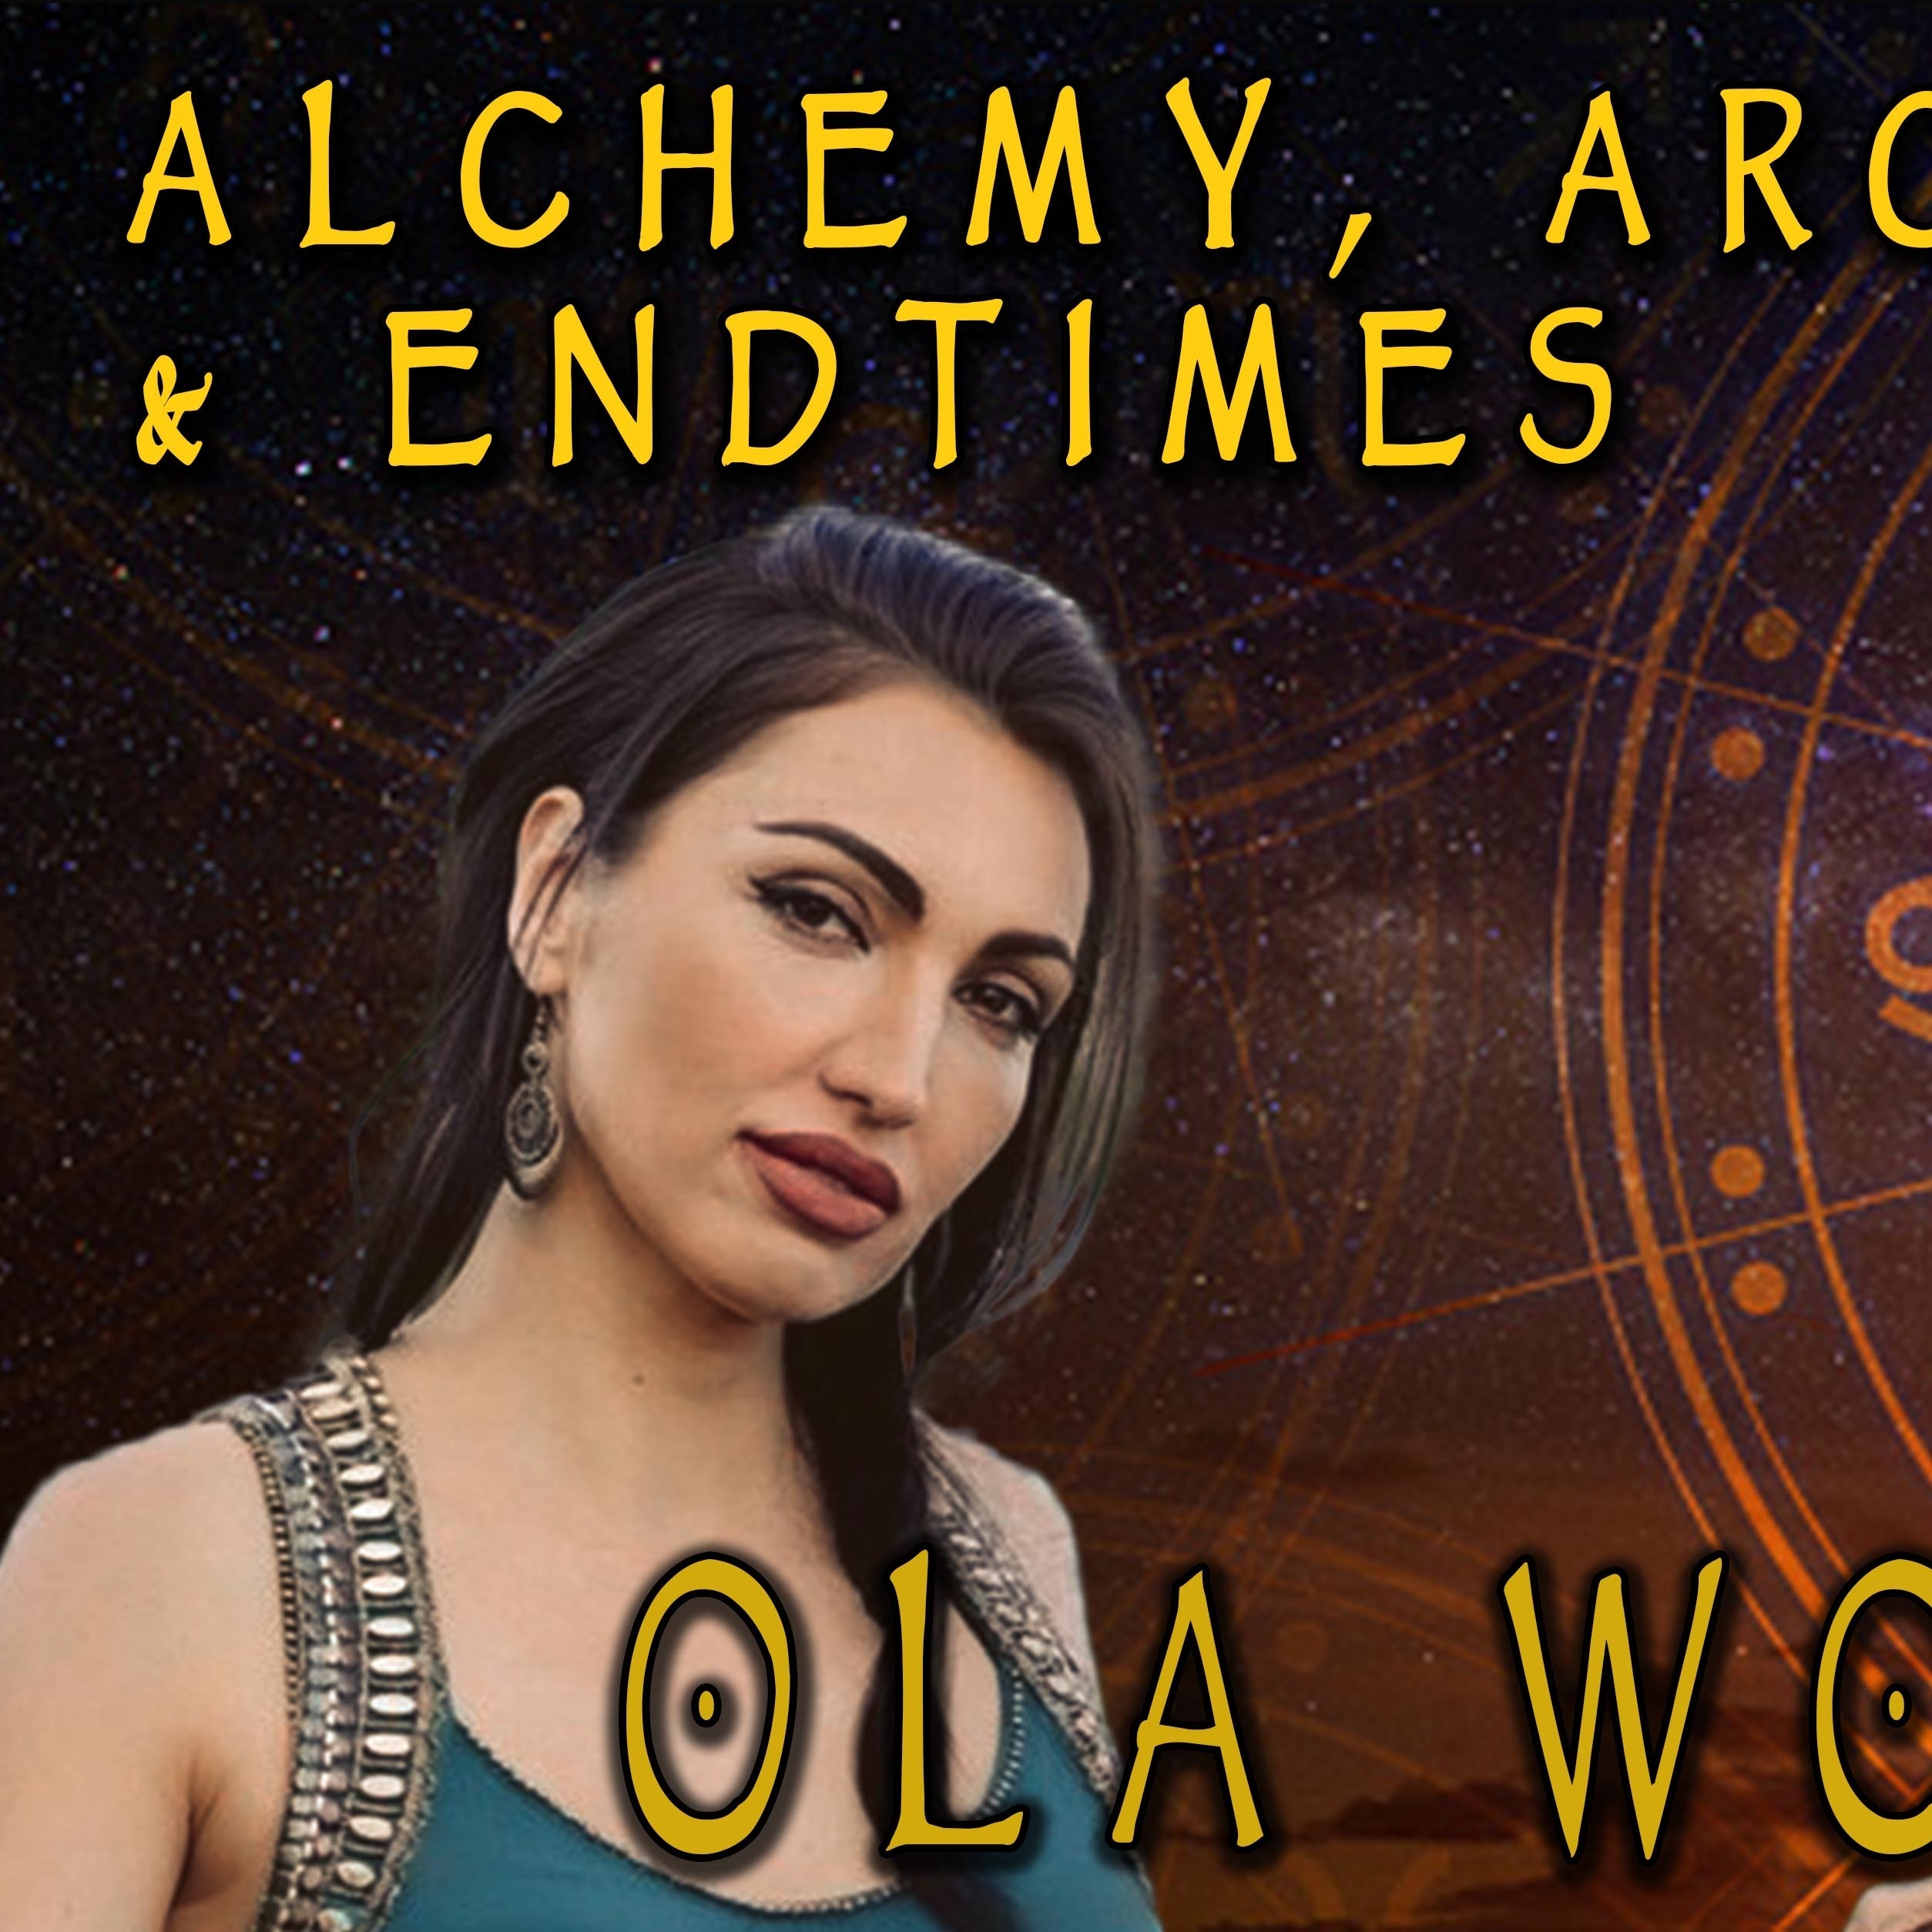 Ola Wolny on Alchemy, Archons & Endtimes